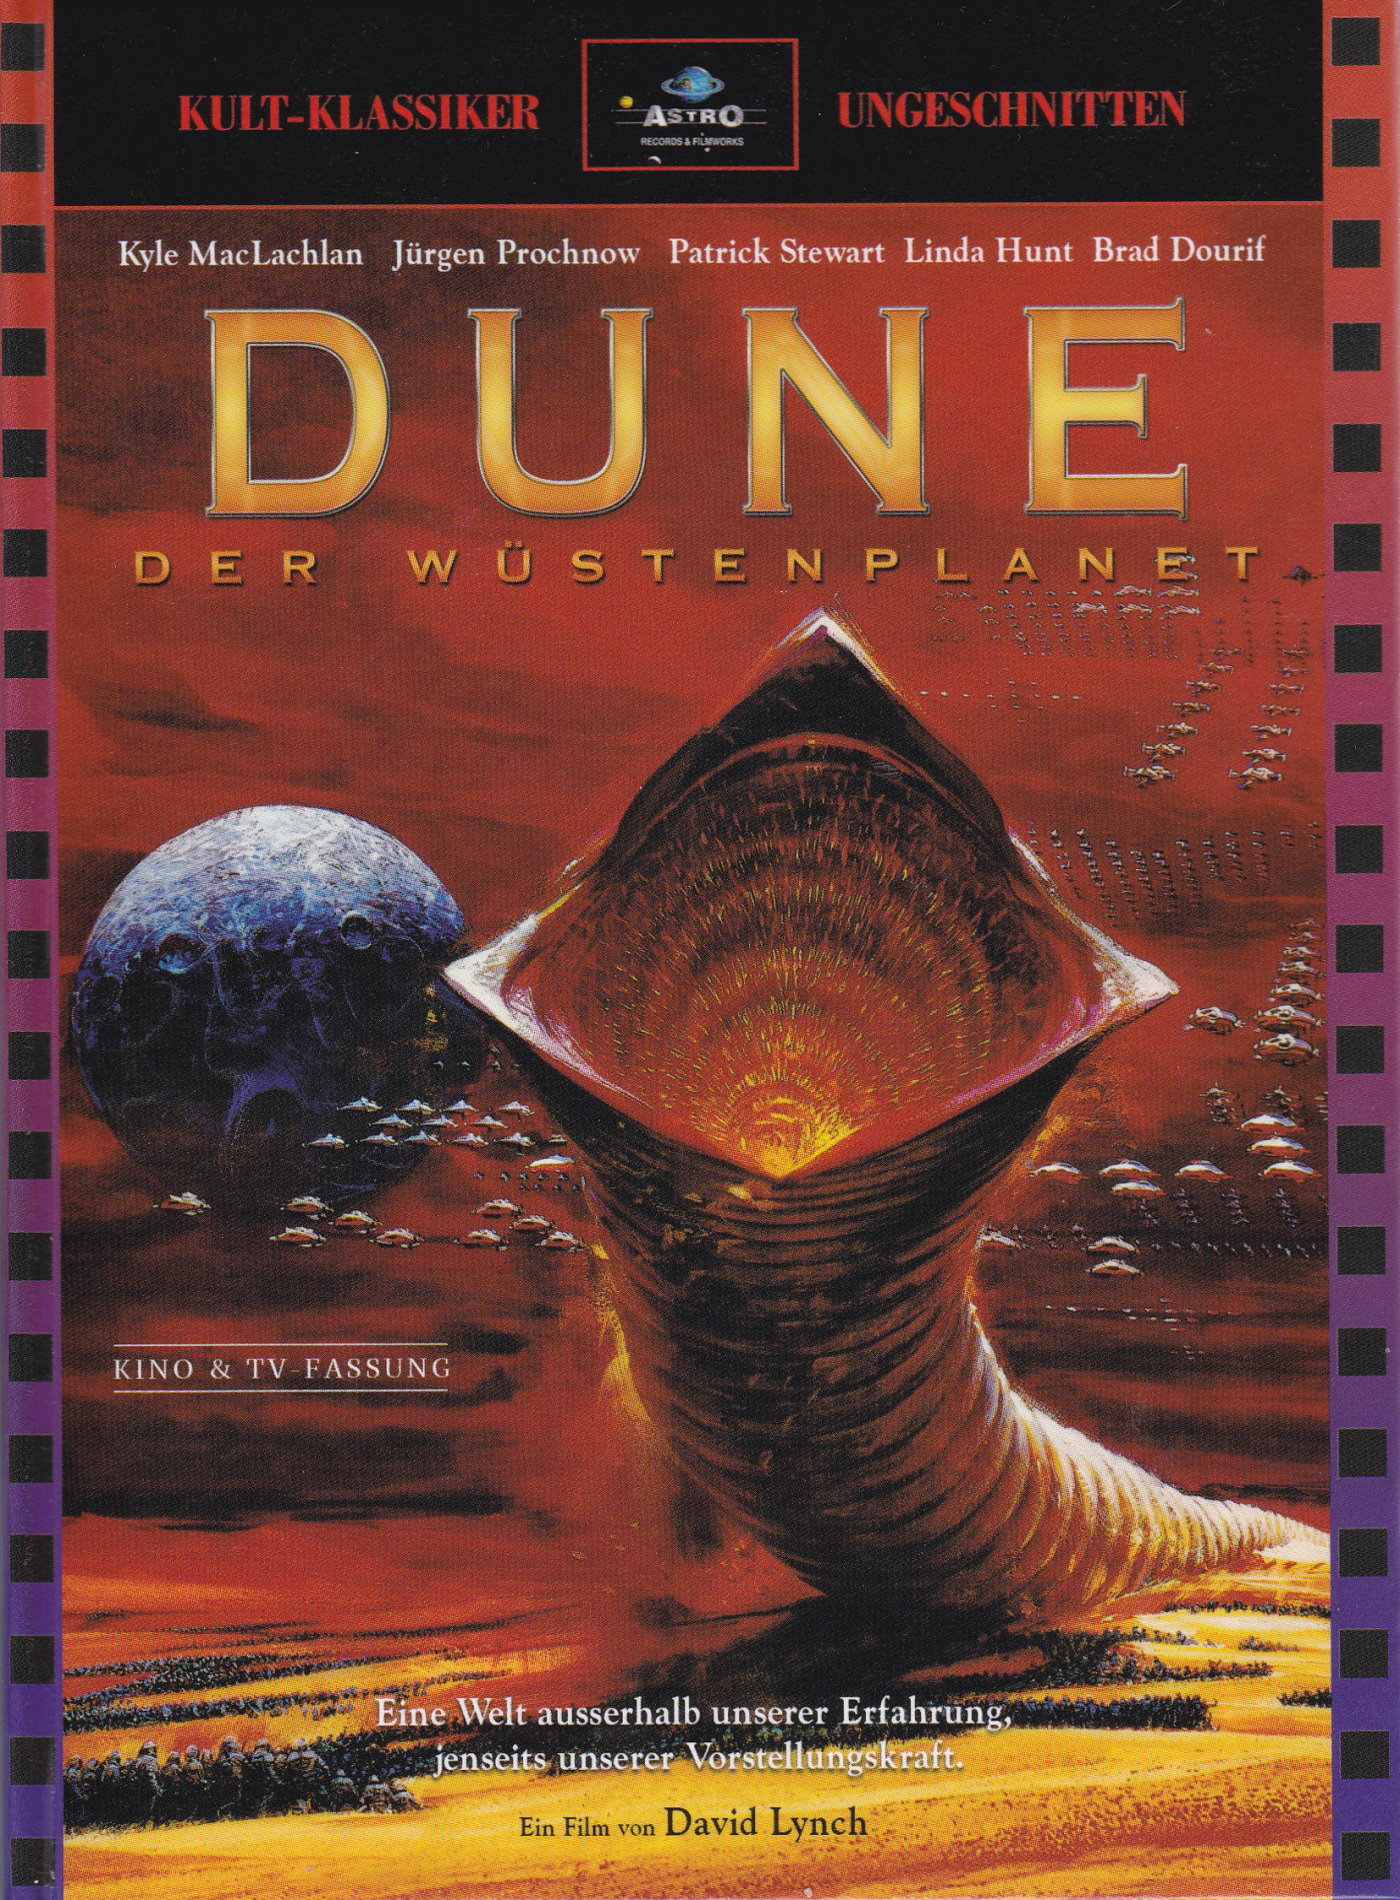 Cover - Dune - Der Wüstenplanet.jpg